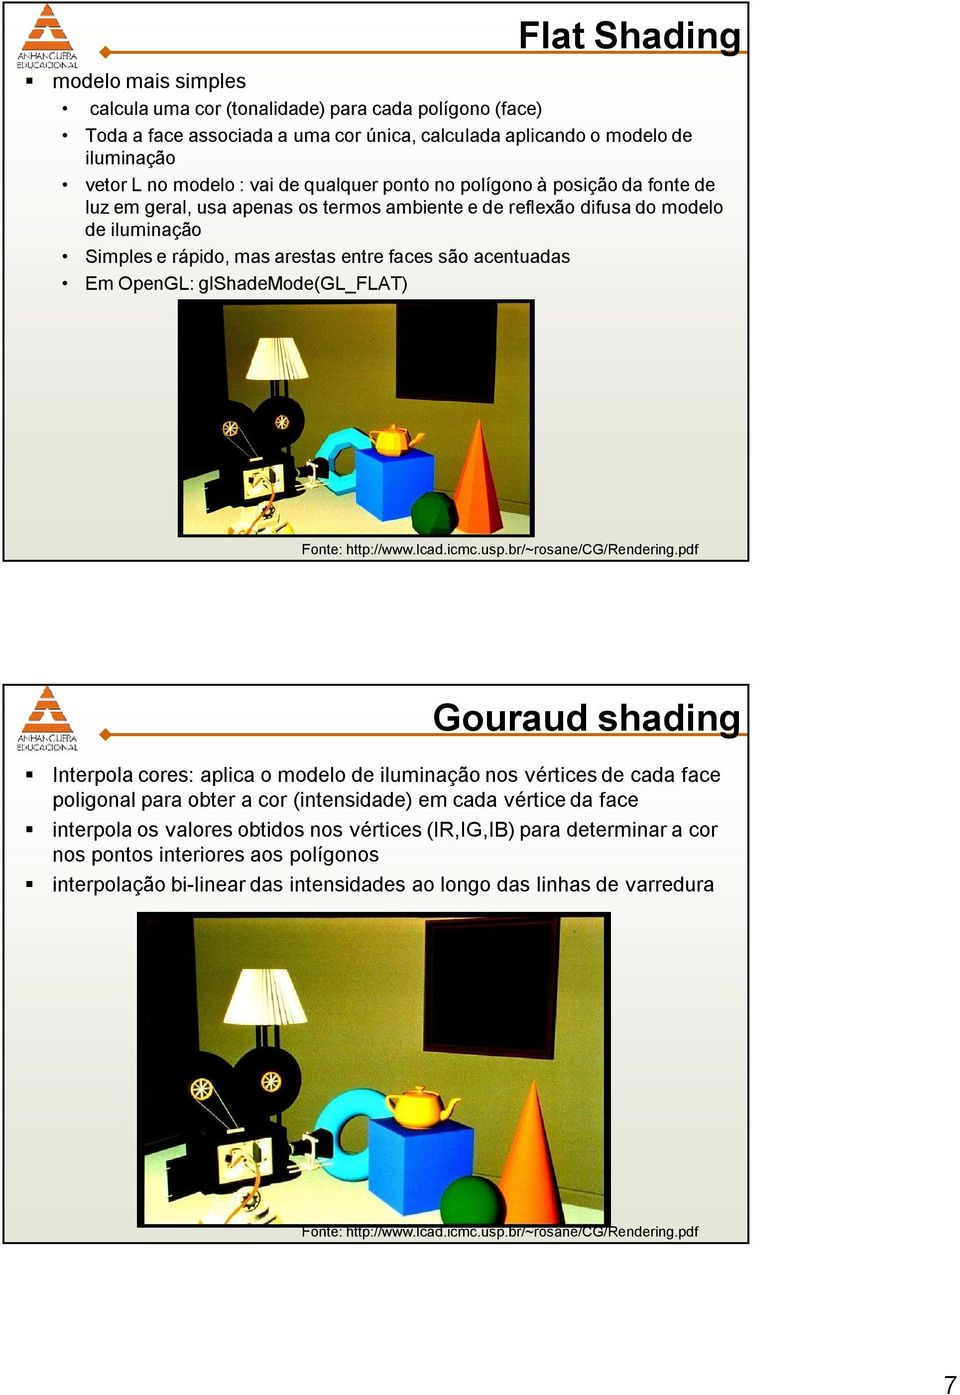 acentuadas Em OpenGL: glshademode(gl_flat) Gouraud shading Interpola cores: aplica o modelo de iluminação nos vértices de cada face poligonal para obter a cor (intensidade) em cada vértice